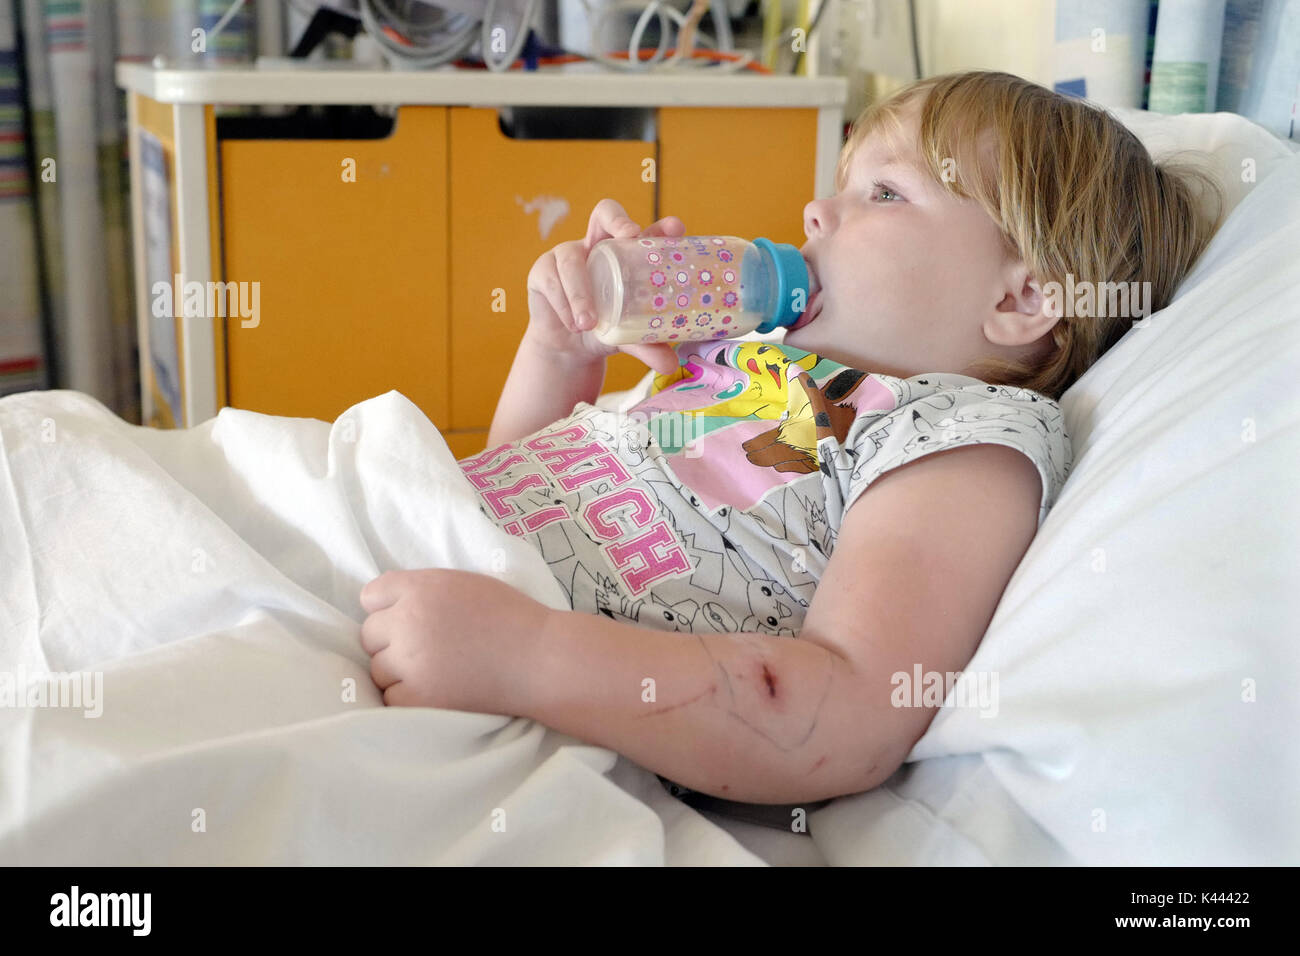 Jeune enfant allongé dans un lit d'hôpital buvant de sa bouteille. Banque D'Images